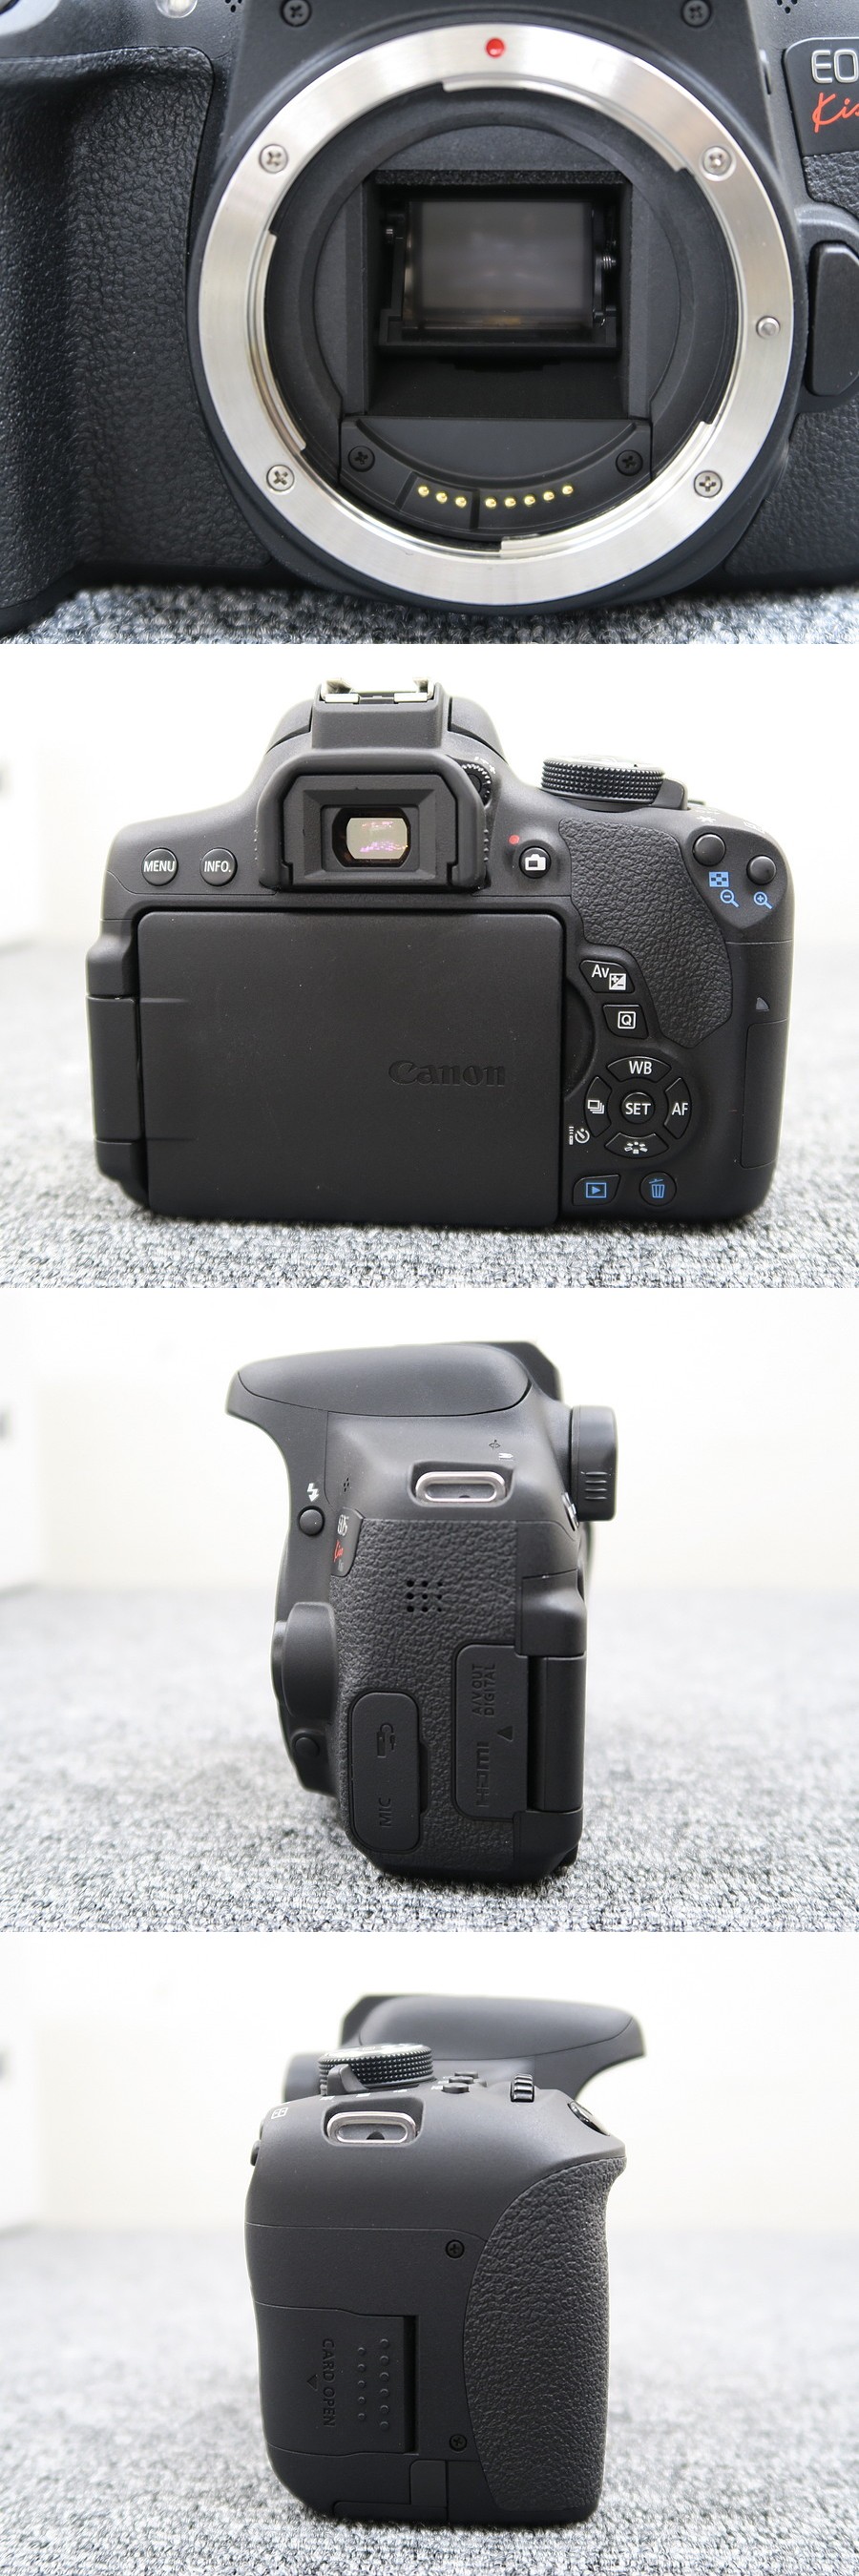 キヤノン Canon EOS Kiss X8i ダブルズームキット カメラ @39540 / 中古オーディオ買取、販売、通販のショップアフロ